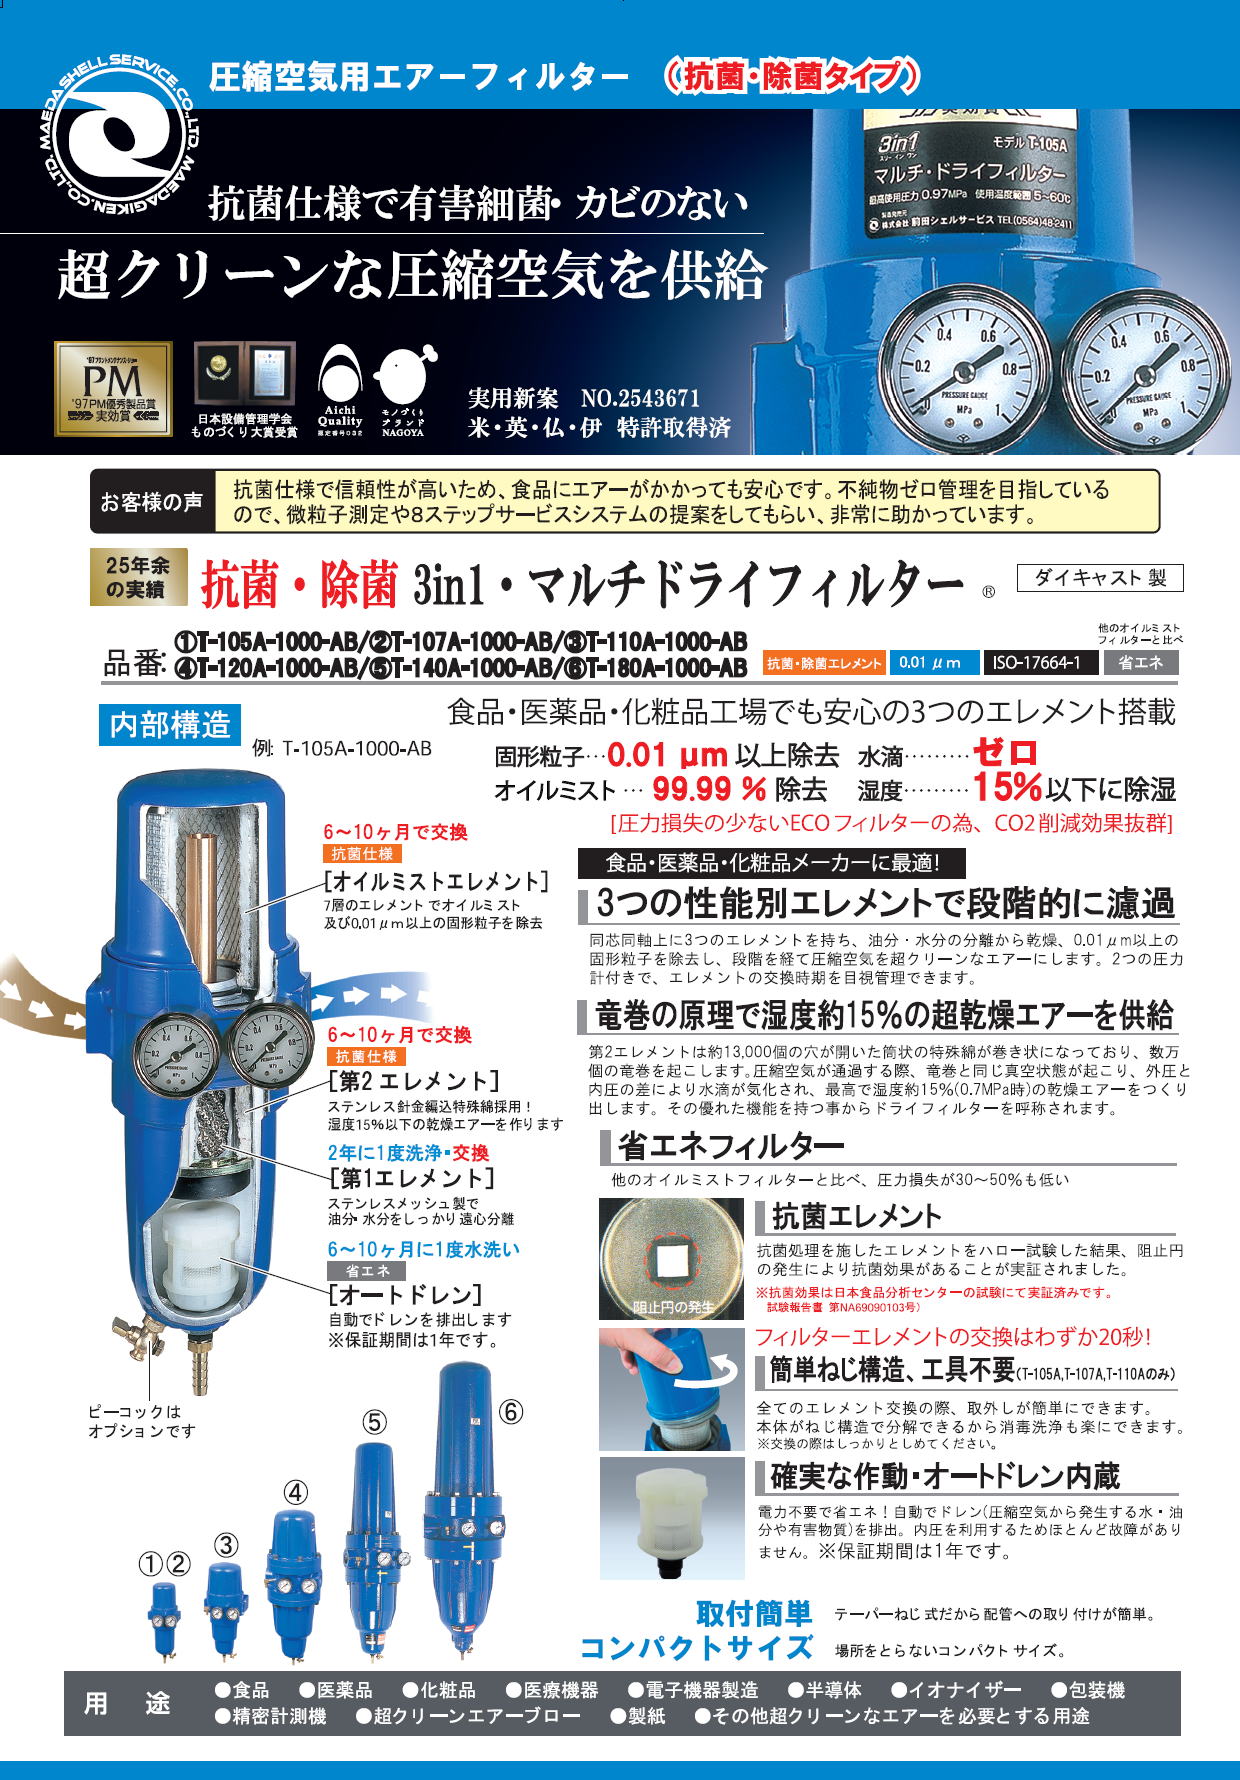 前田シェルサービス 抗菌3in1・マルチドライフィルター 圧縮空気用エアーフィルター